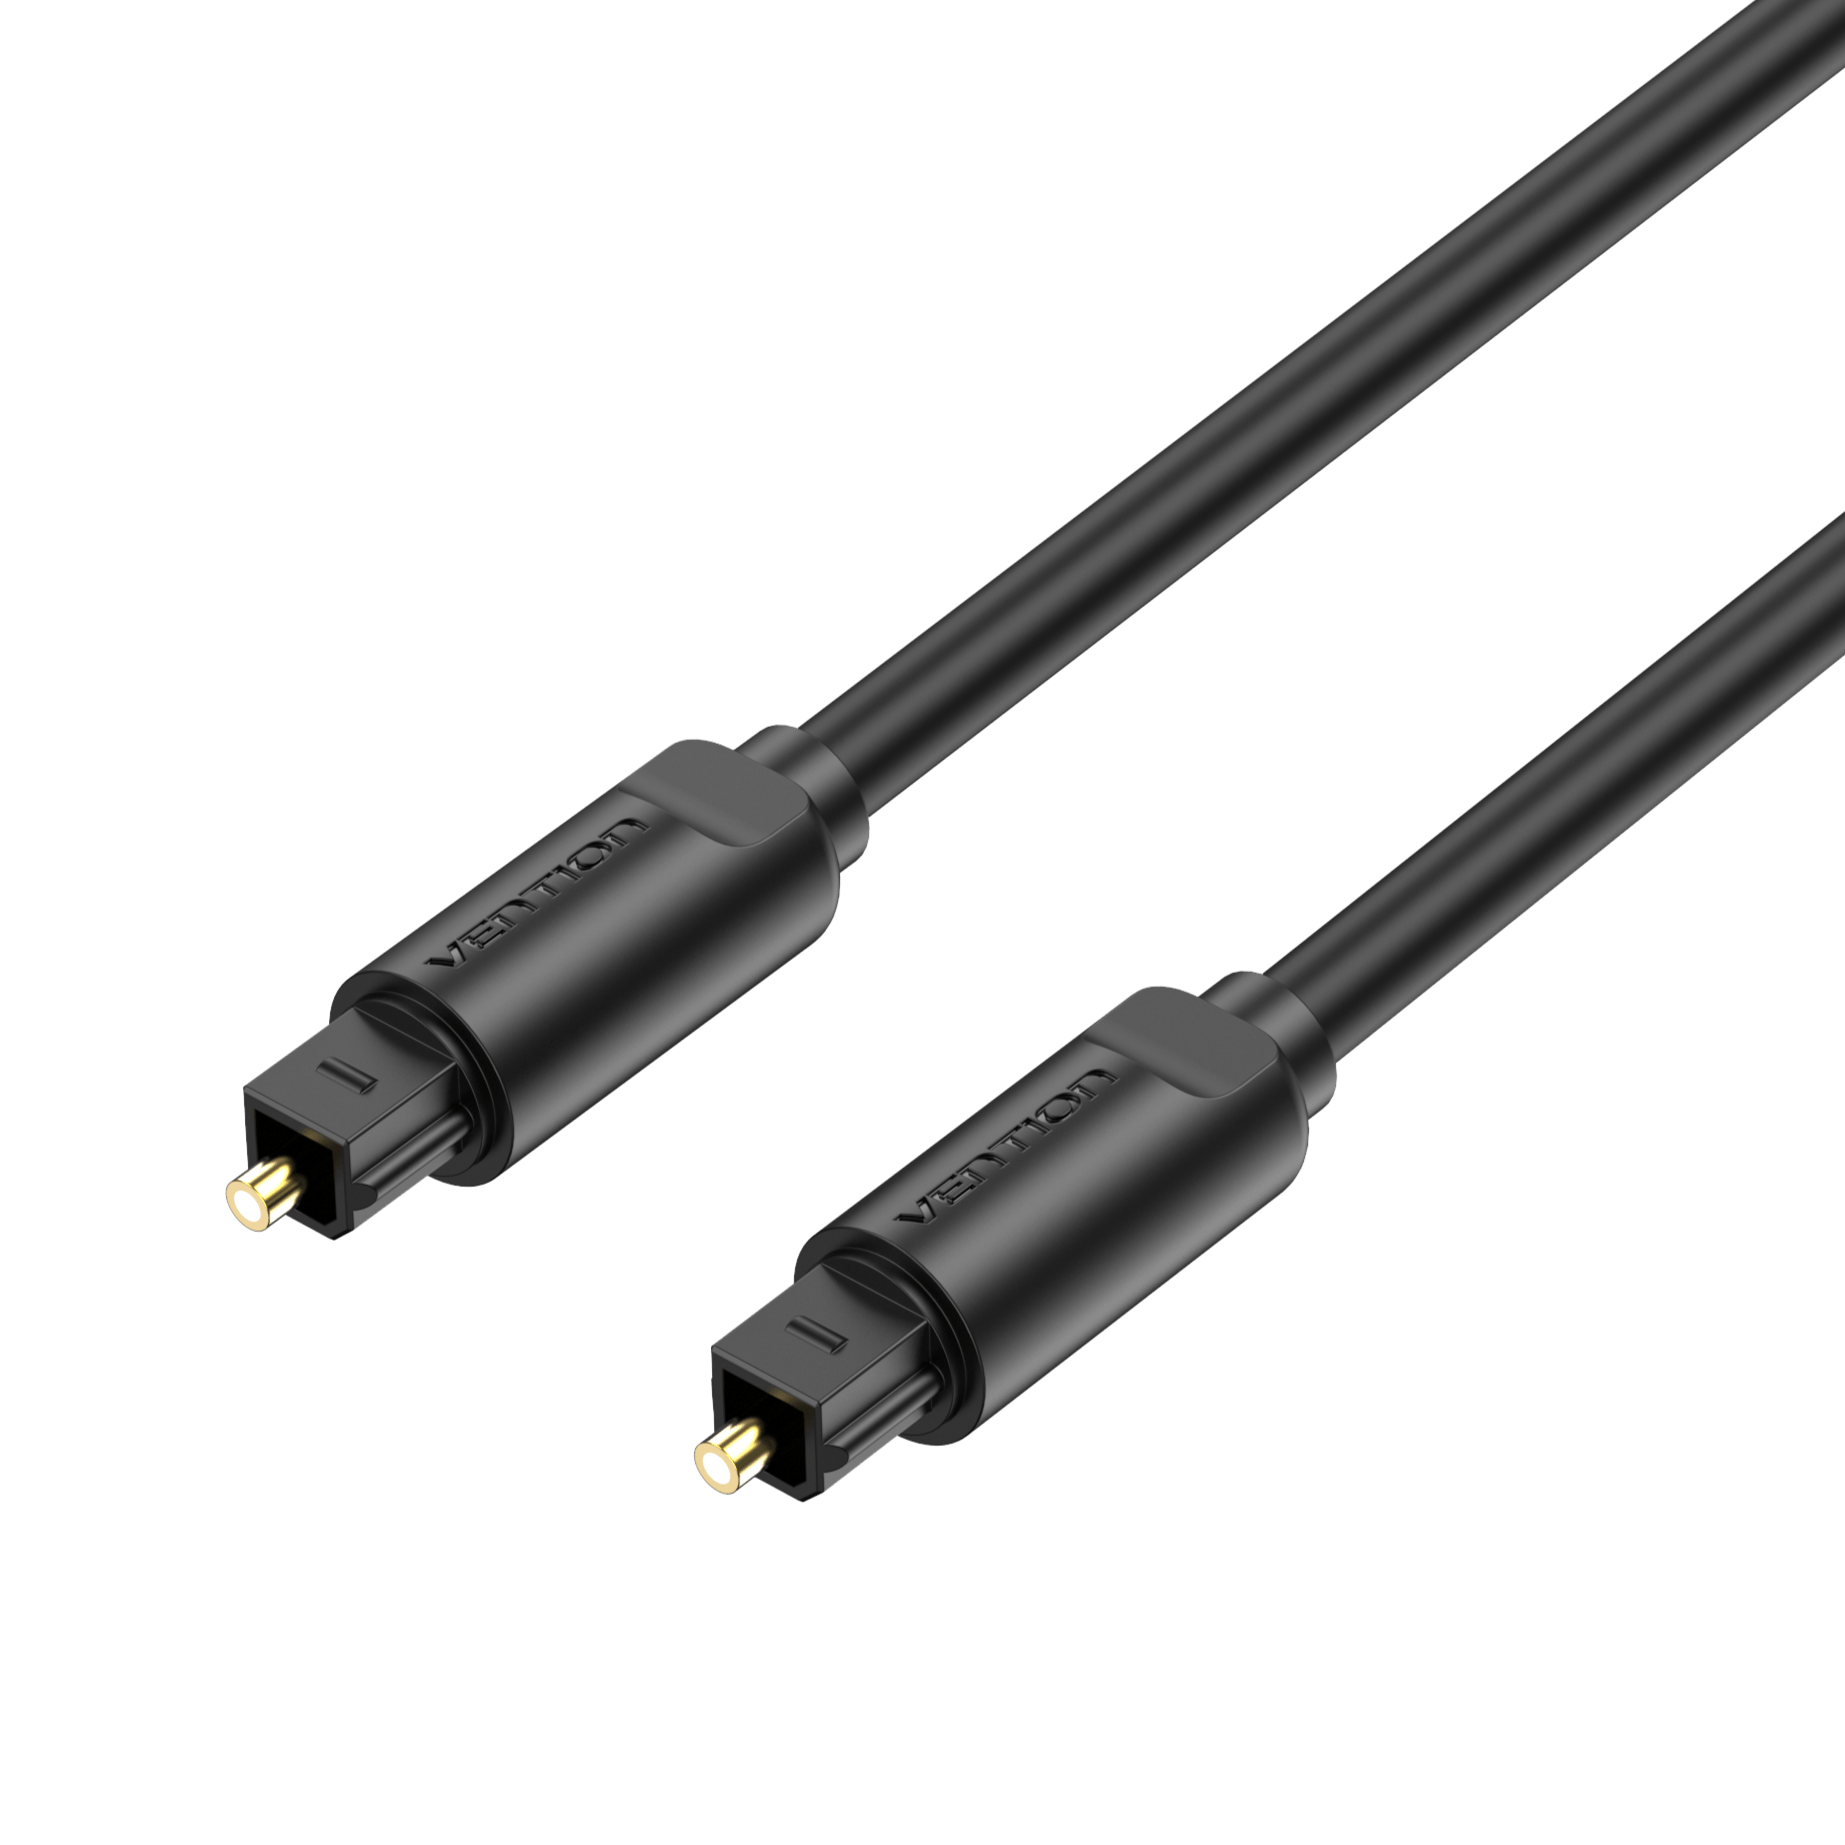 Câble audio numérique optique 10m / câble TOSLINK (TOSLINK vers TOSLINK,  câble fibre optique pour home cinéma